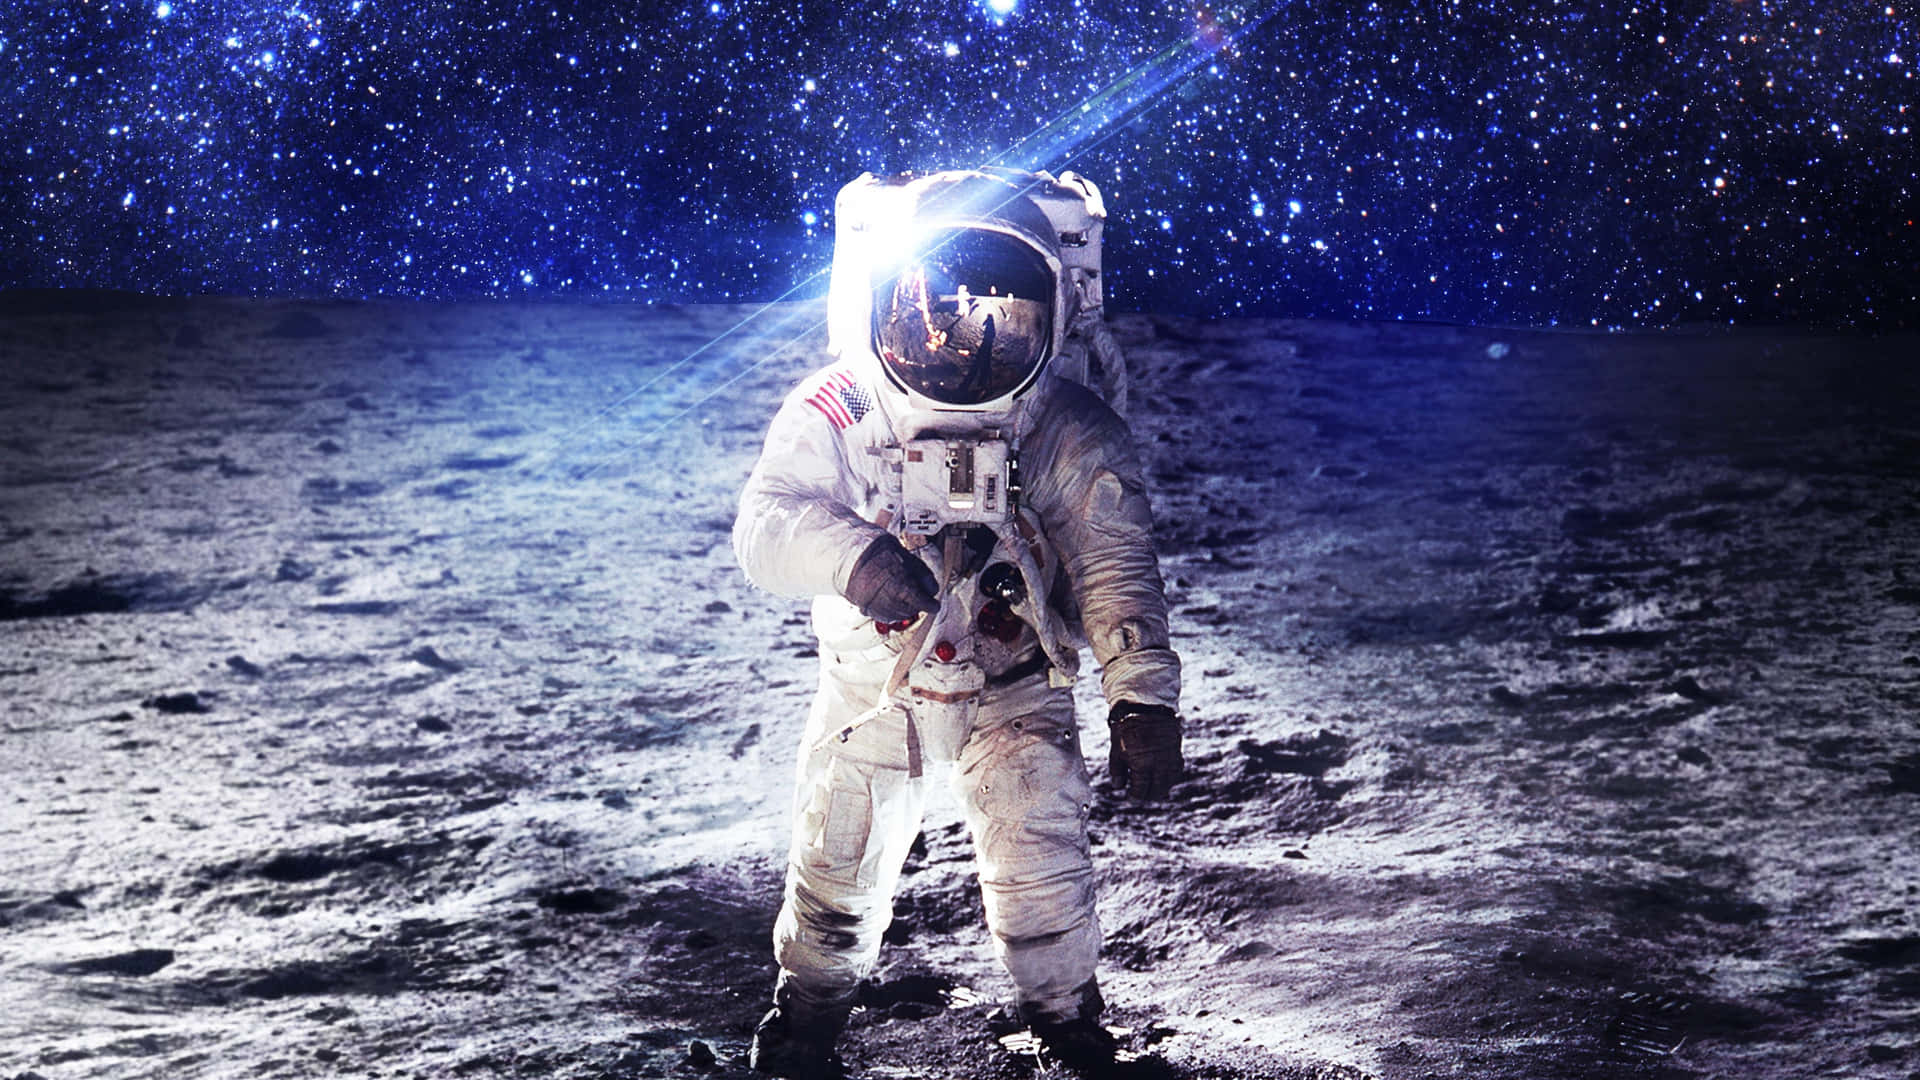 Astronauton Moon Surface Wallpaper